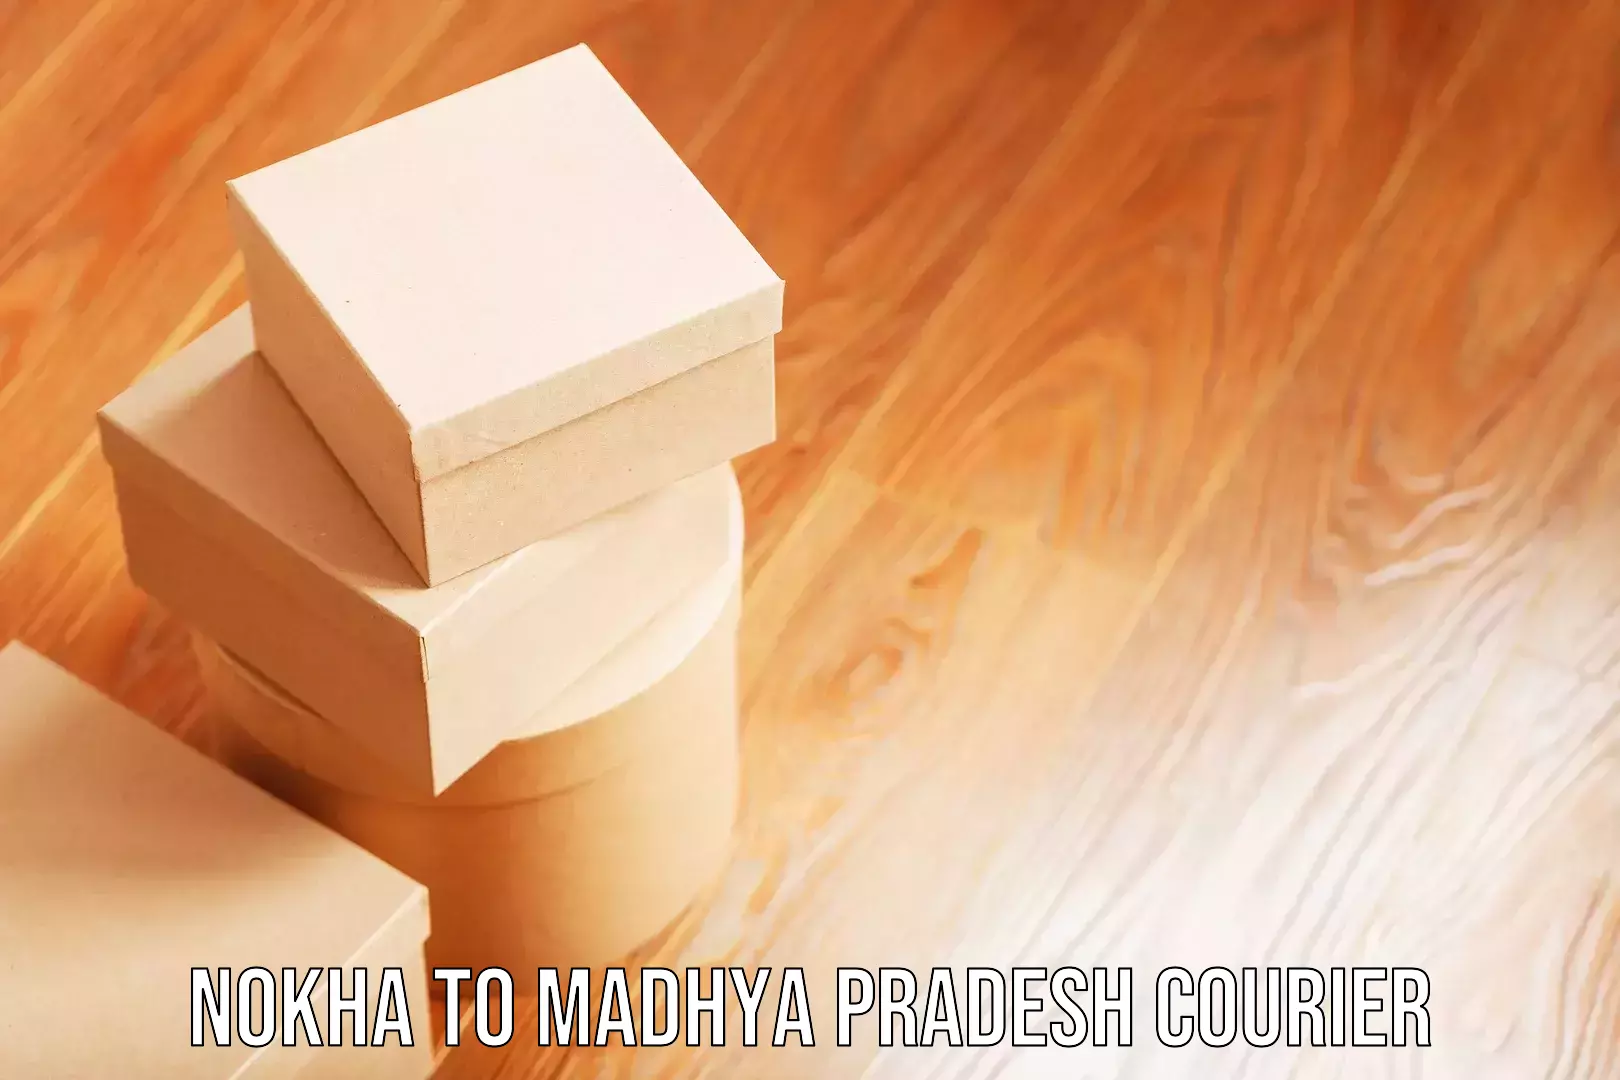 Baggage delivery technology Nokha to Madhya Pradesh